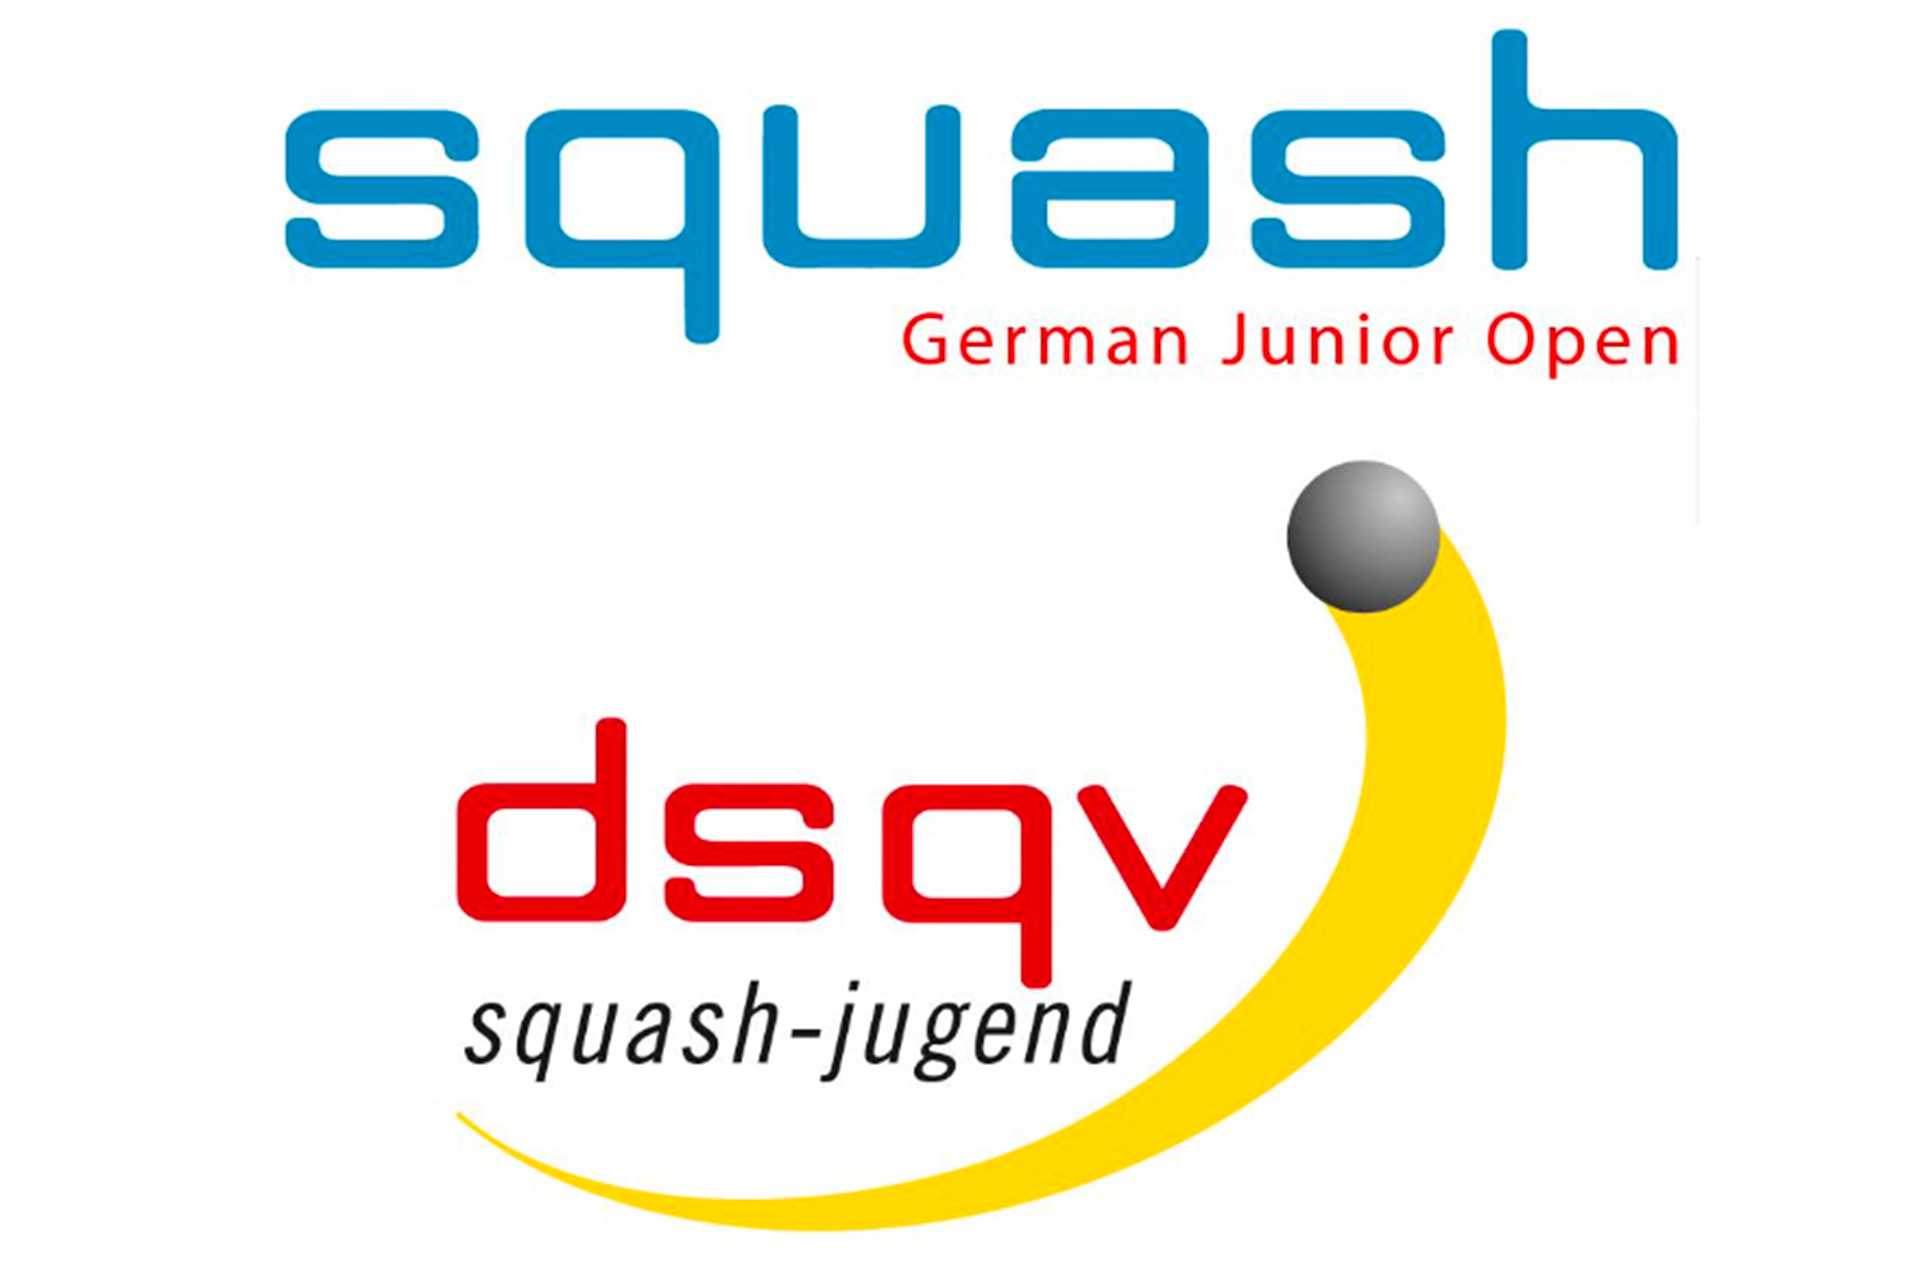 German Squash Junior Open 2017